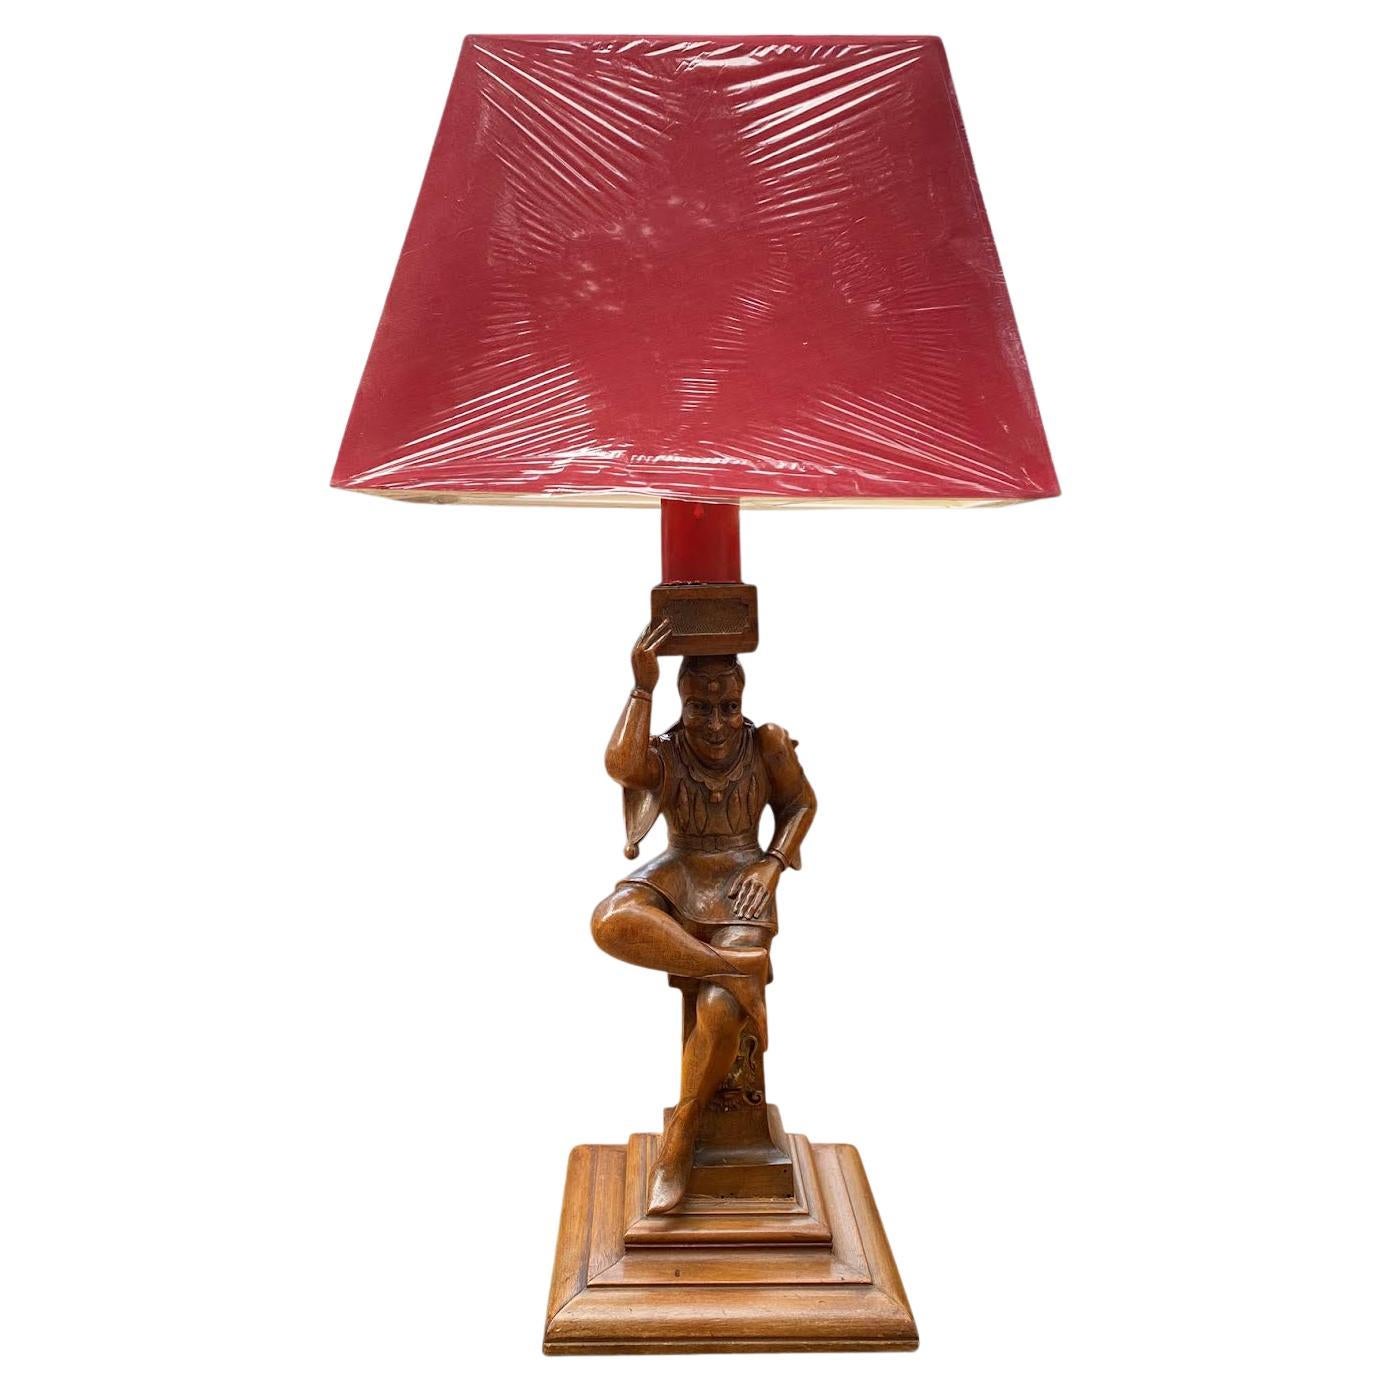 Ancienne lampe de table bouffon de cour française en noyer sculpté avec abat-jour rouge